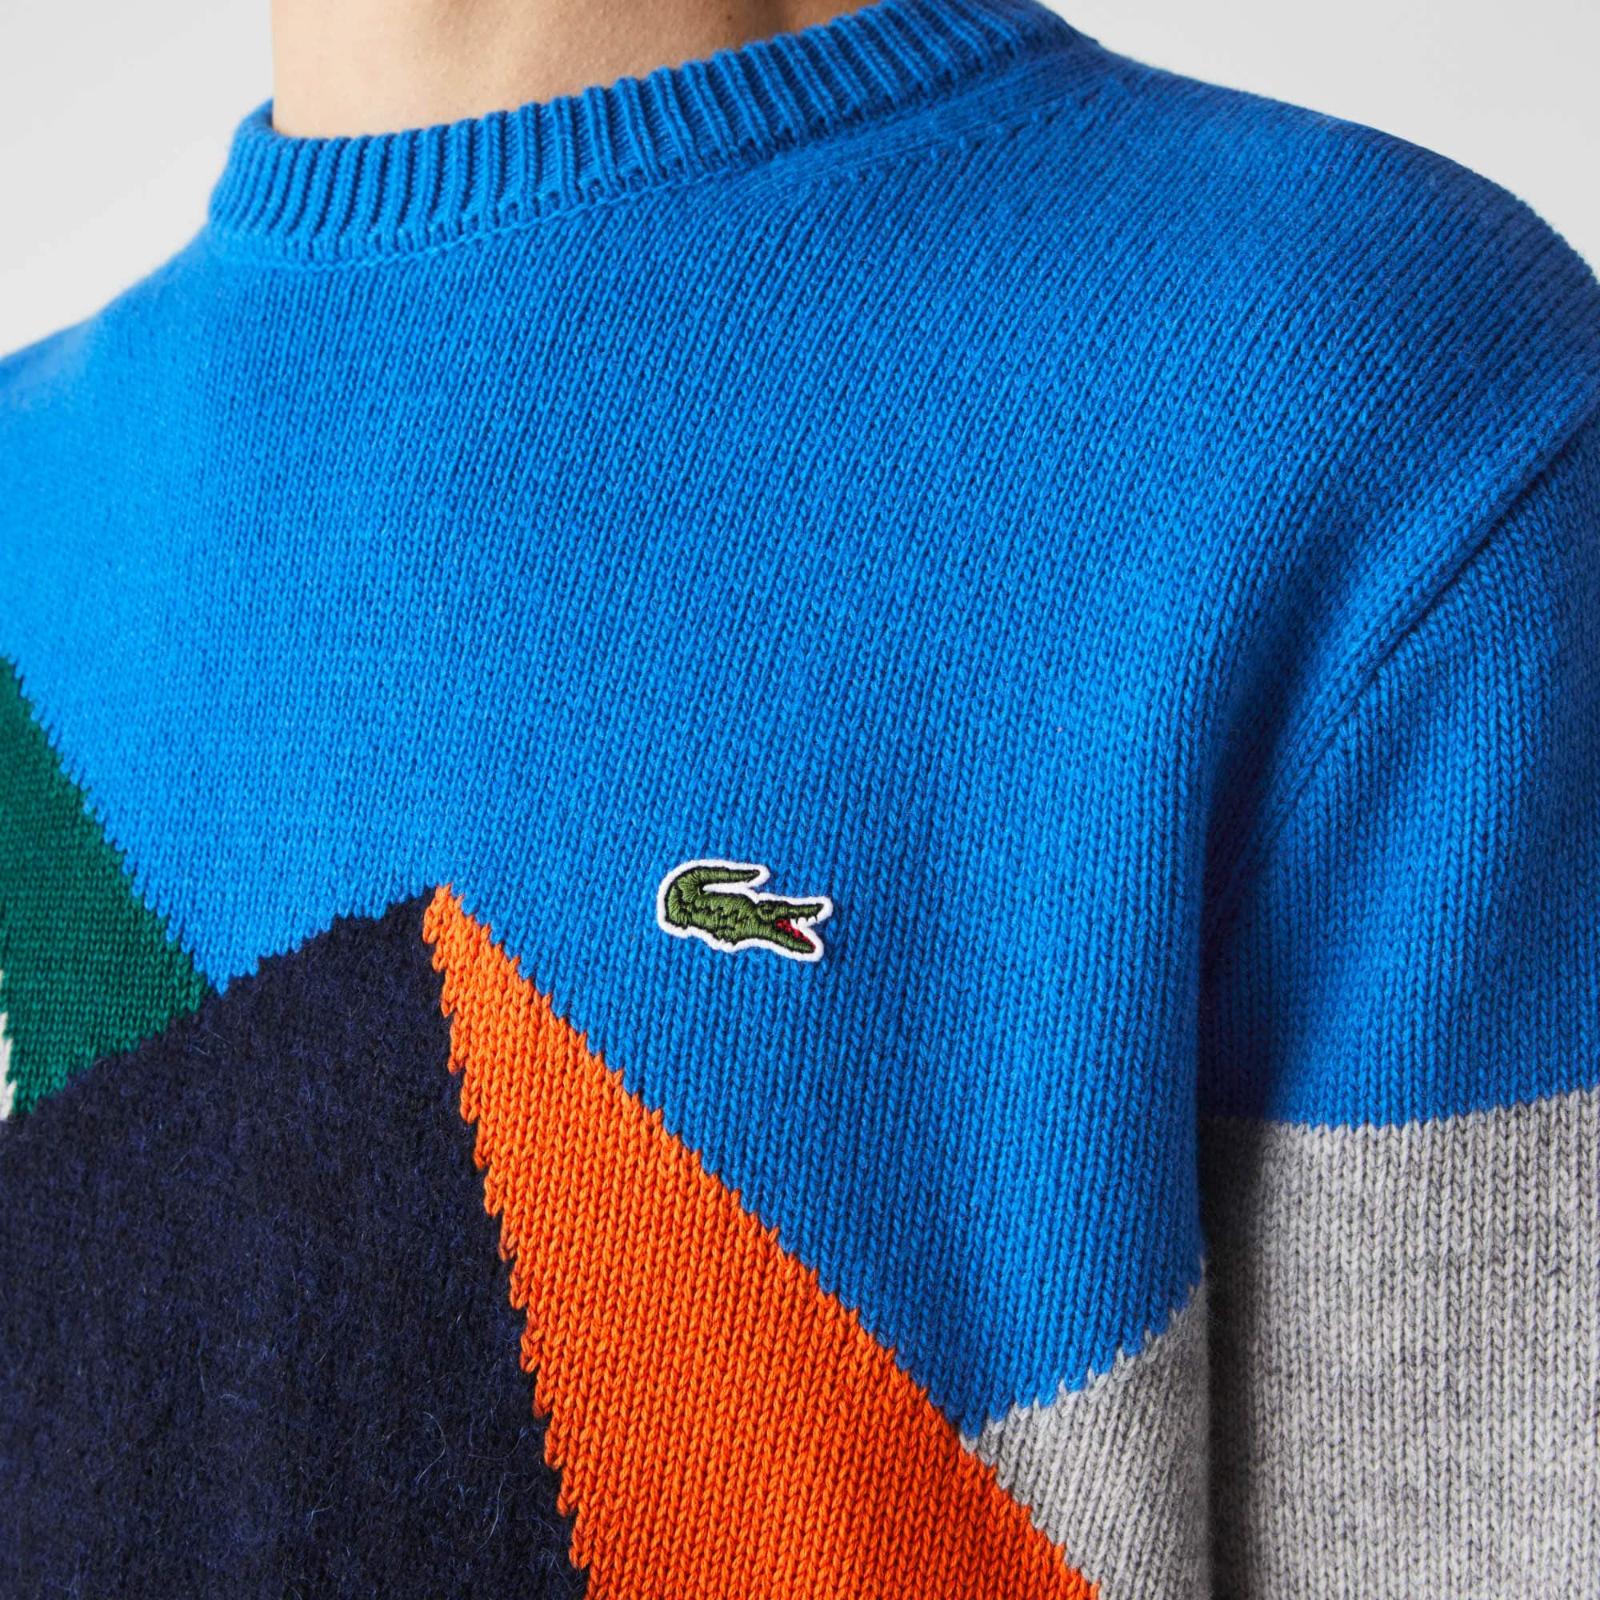 Men’s Crew Neck Graphic Design Wool Blend Sweater AH6796-51